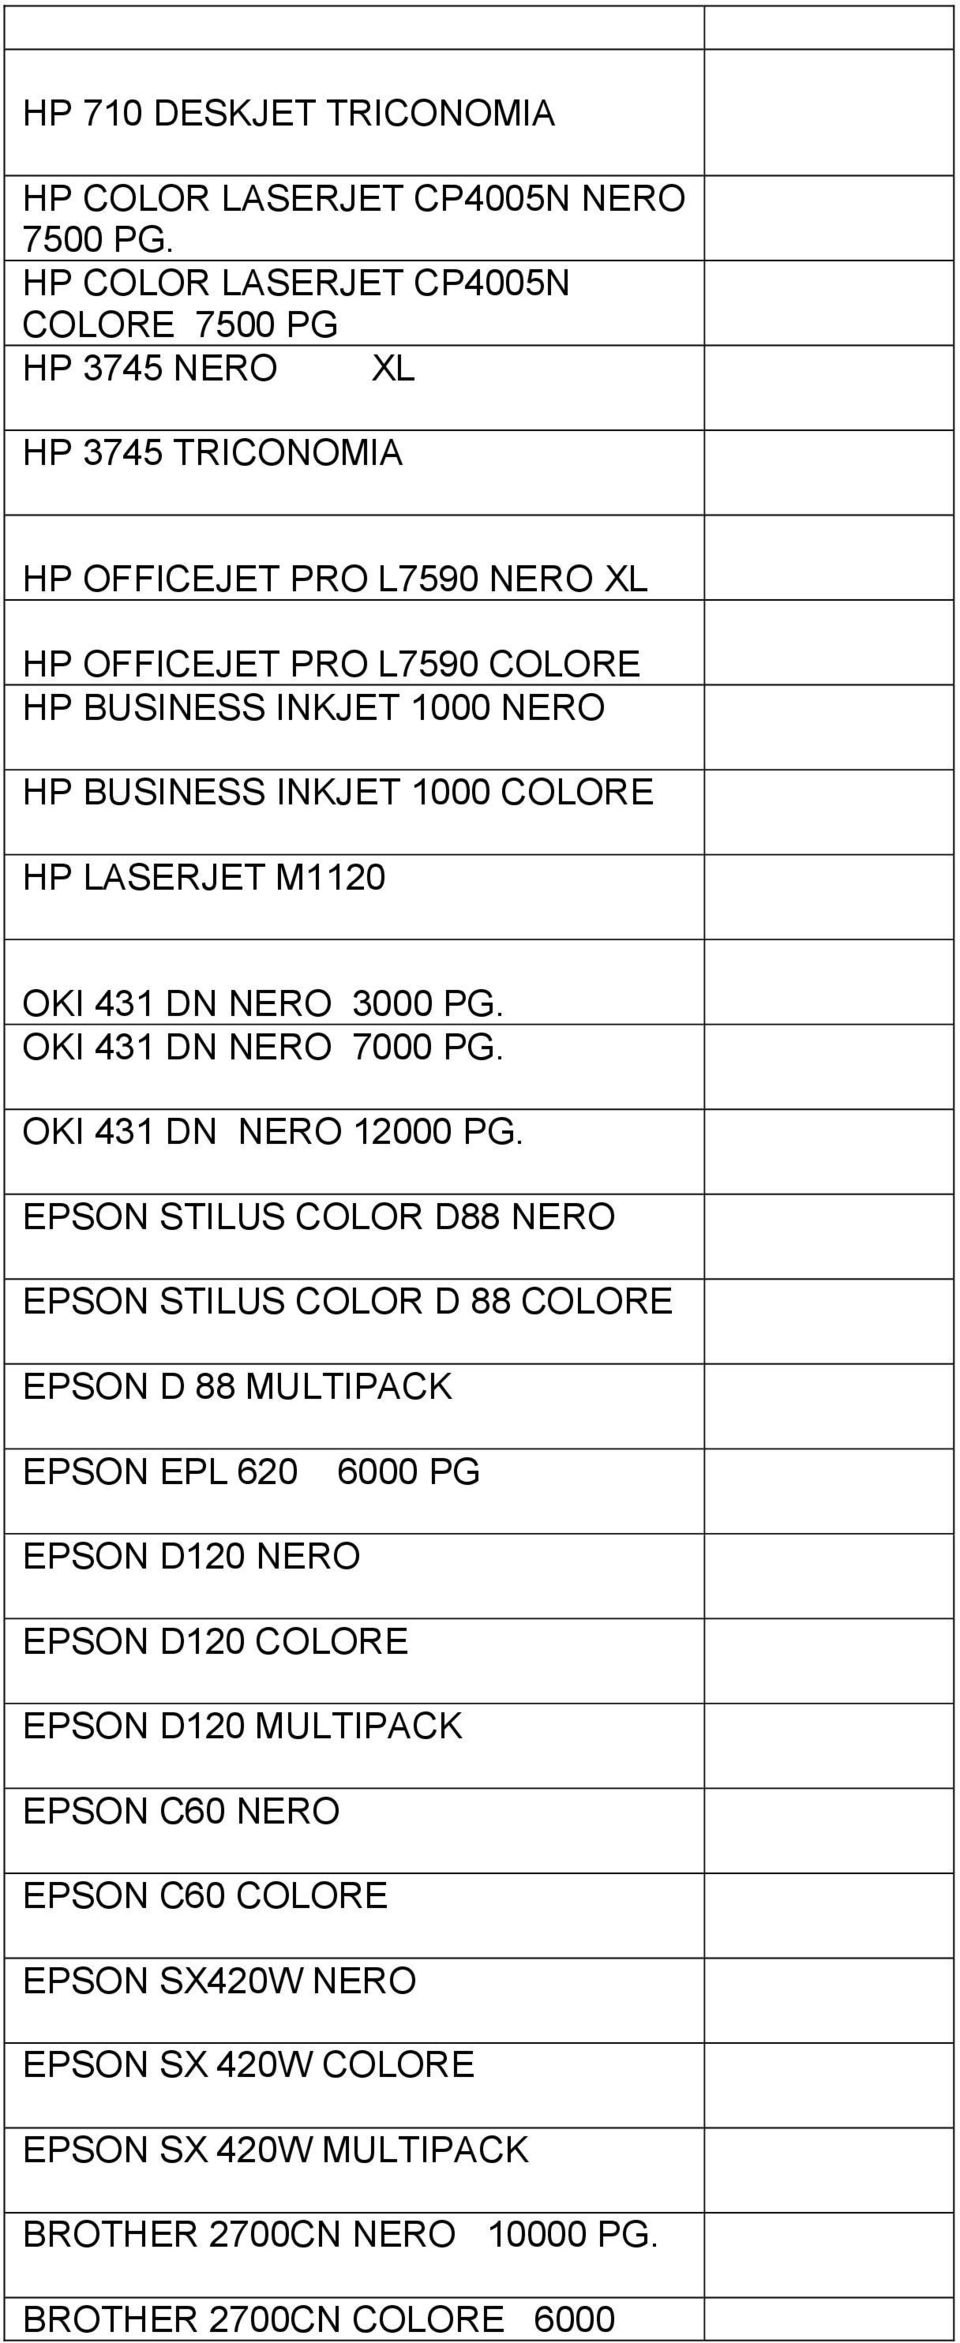 HP BUSINESS INKJET 1000 COLORE HP LASERJET M1120 OKI 431 DN NERO 3000 PG. OKI 431 DN NERO 7000 PG. OKI 431 DN NERO 12000 PG.